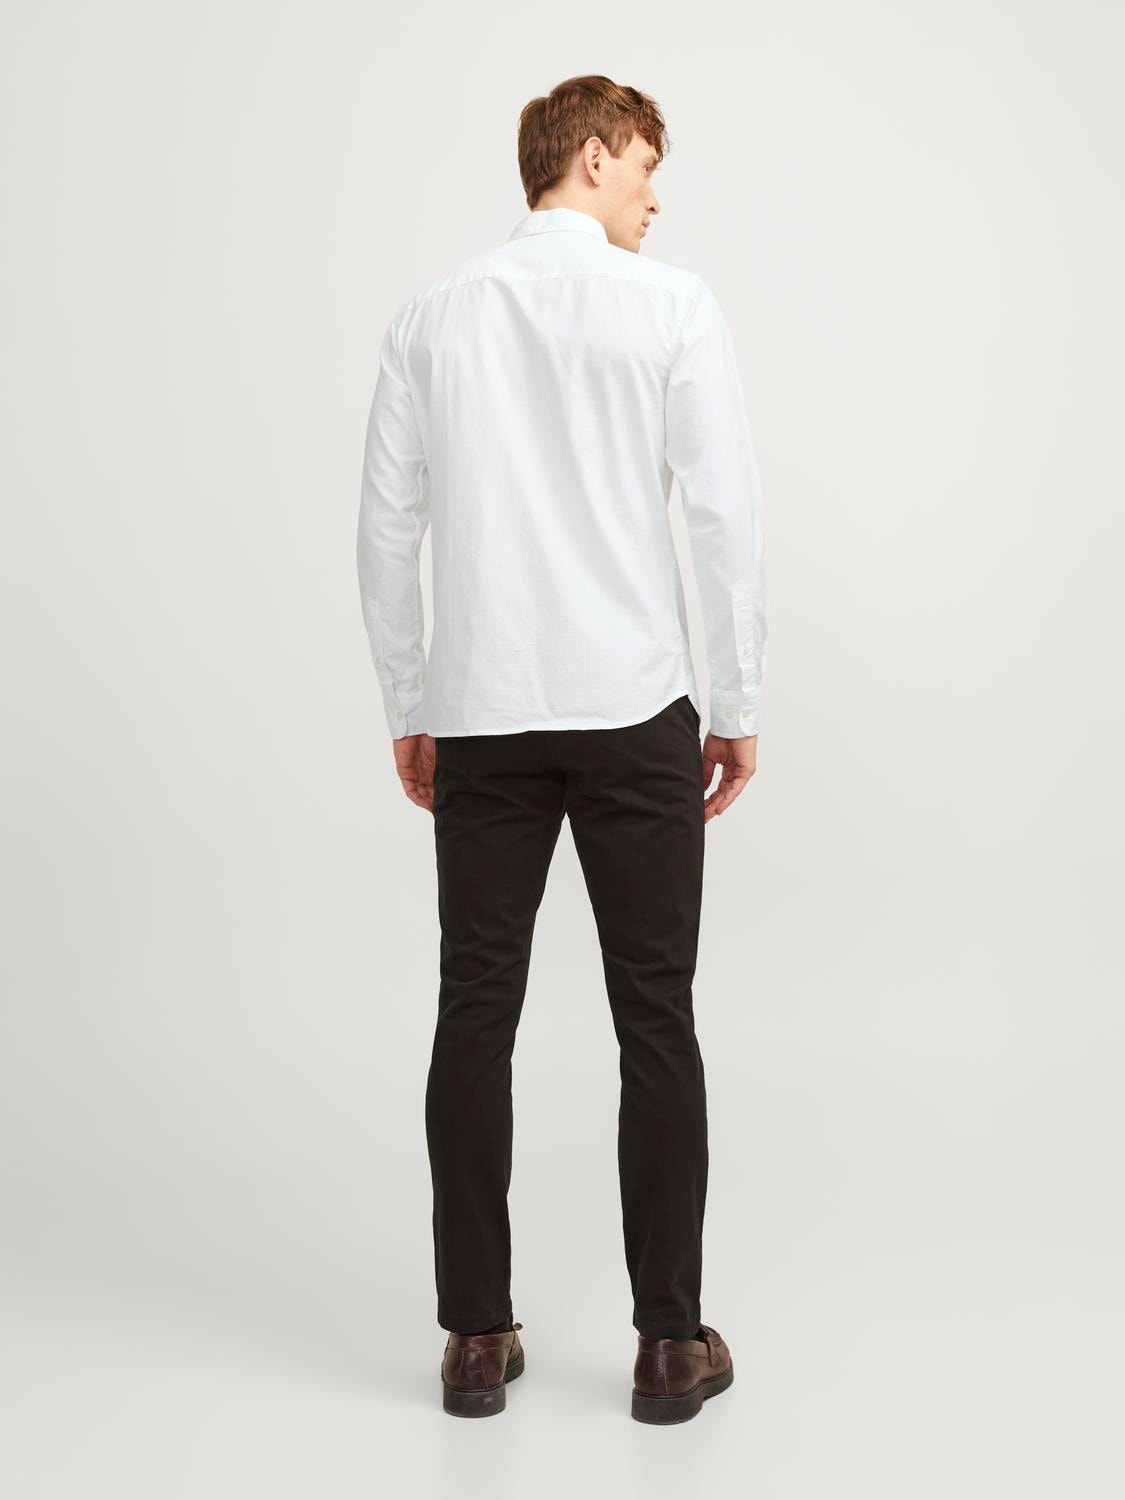 Jack & Jones Slim Fit Společenská košile -White - 12192150